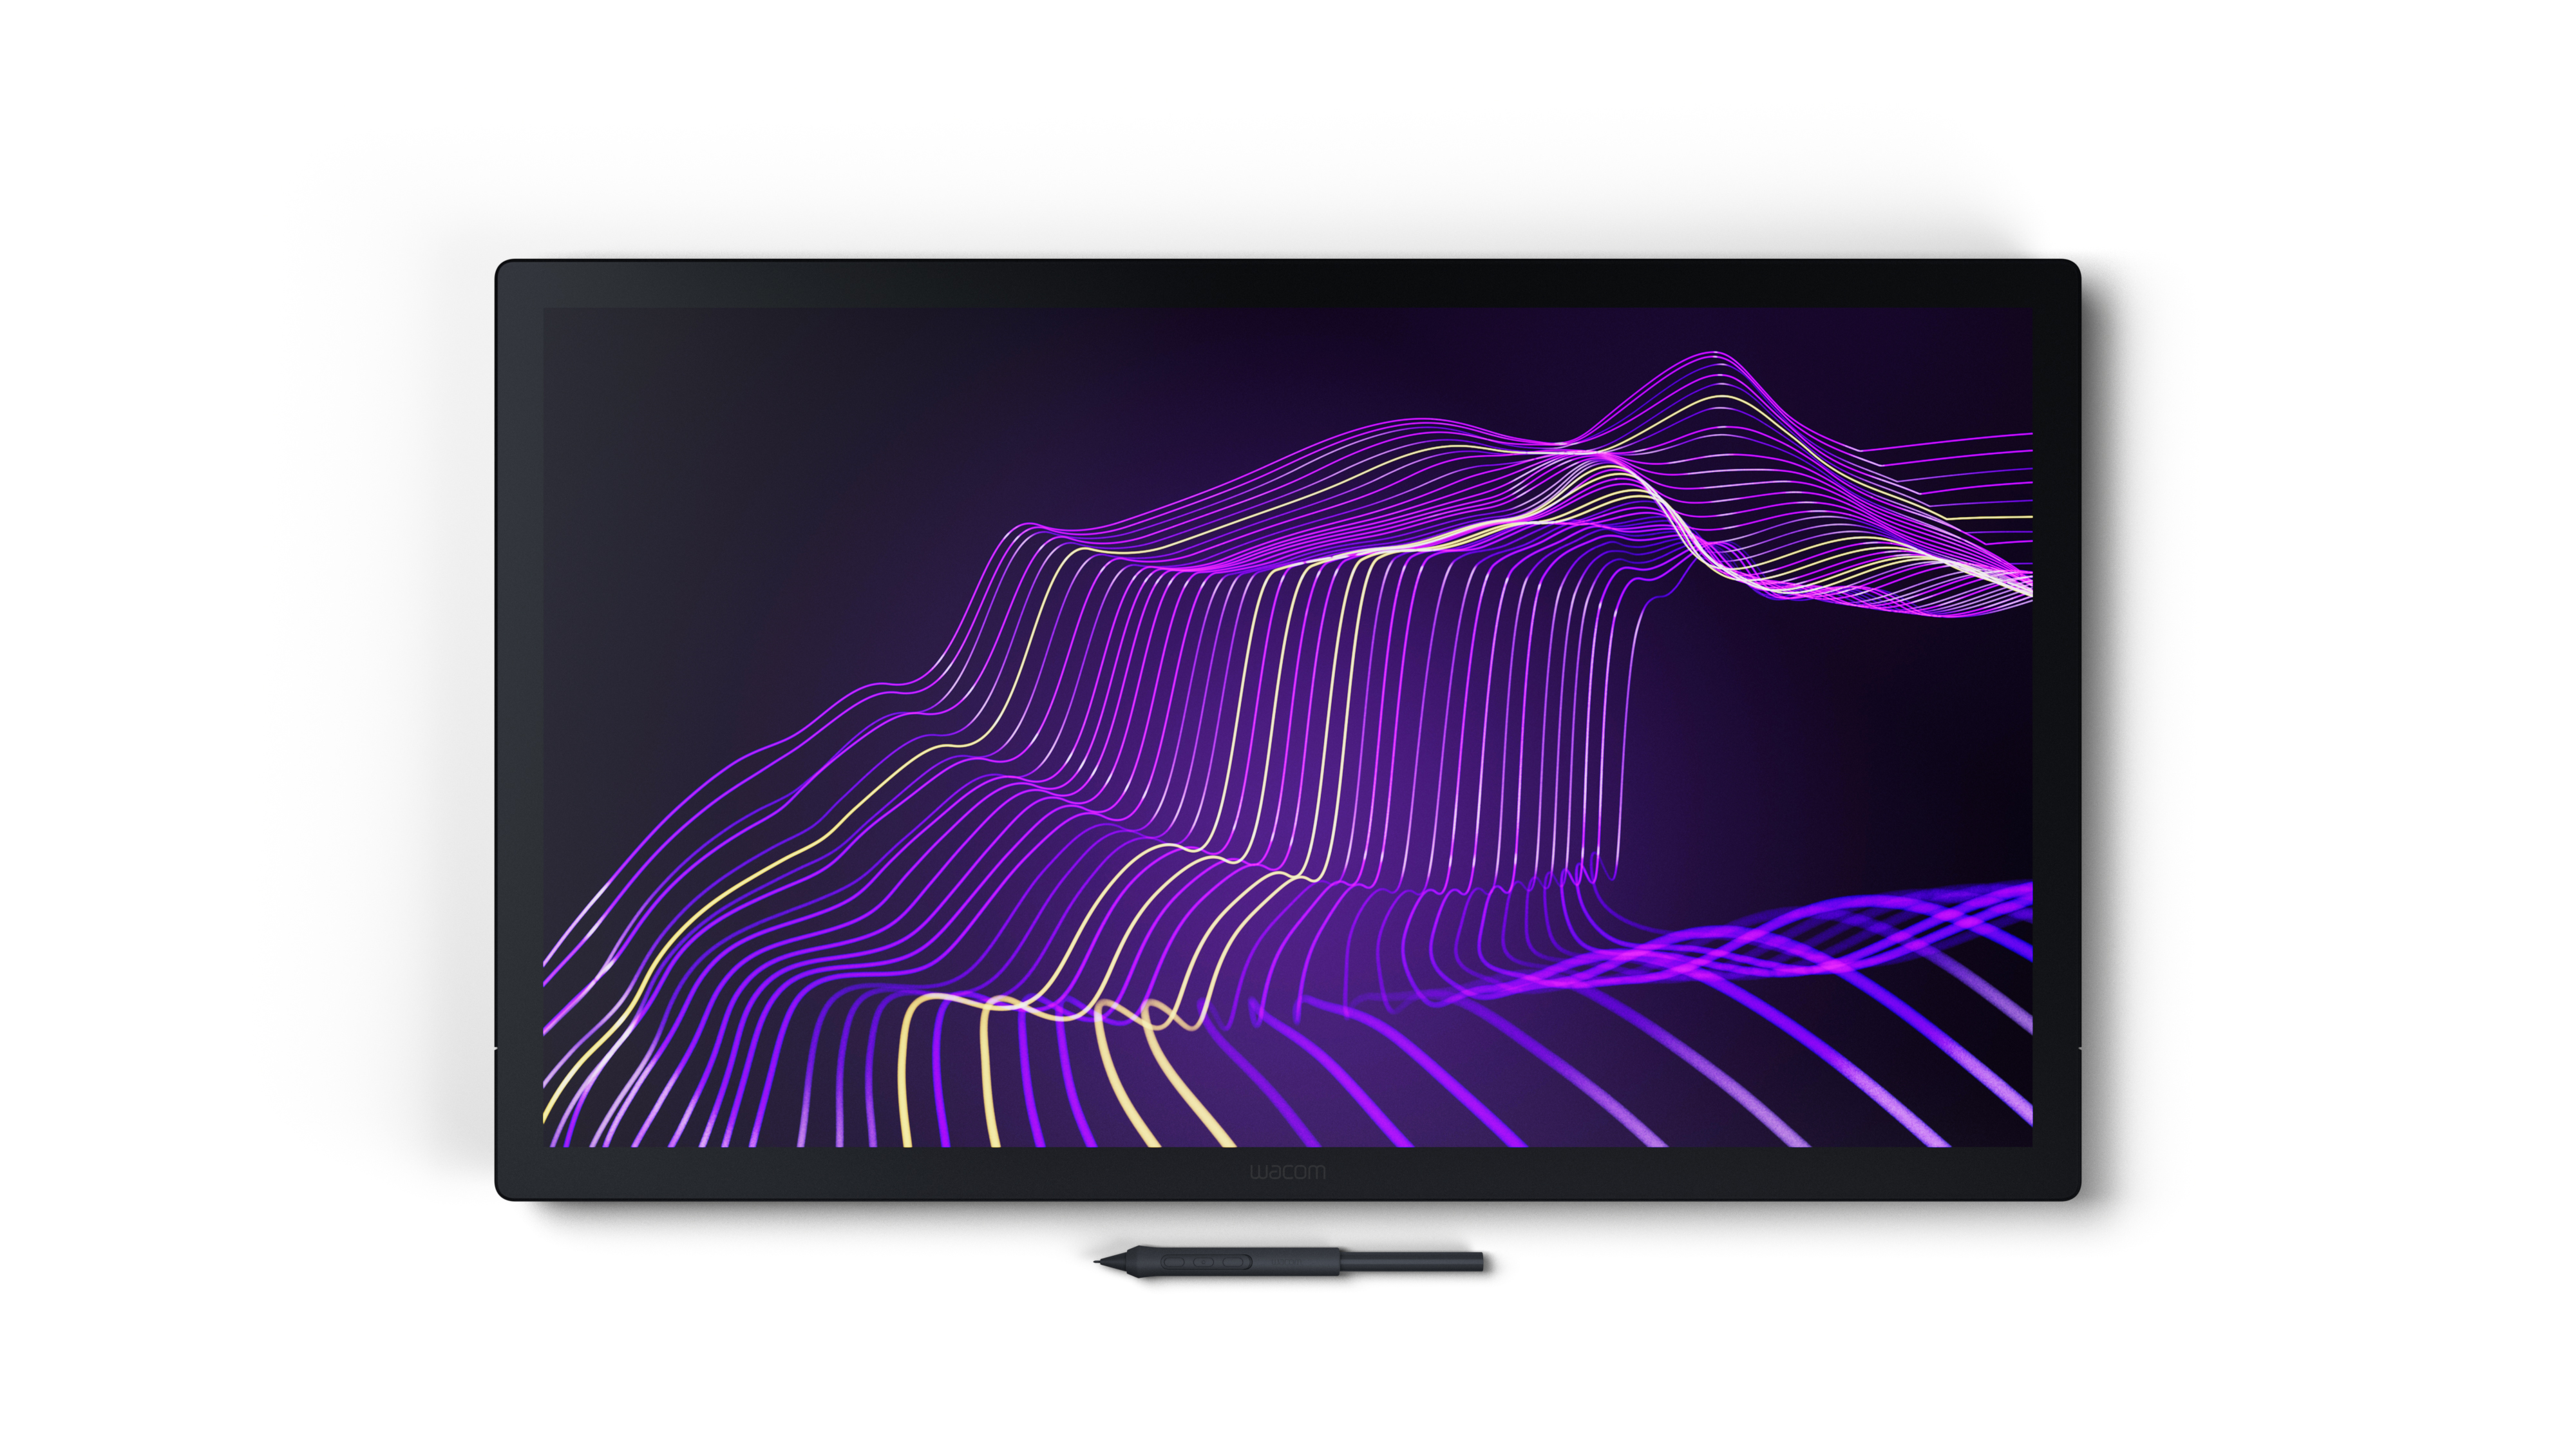 Vorderansicht des Wacom Cintiq Pro 27 mit Bildschirm gefüllt mit einem violetten abstrakten Muster.